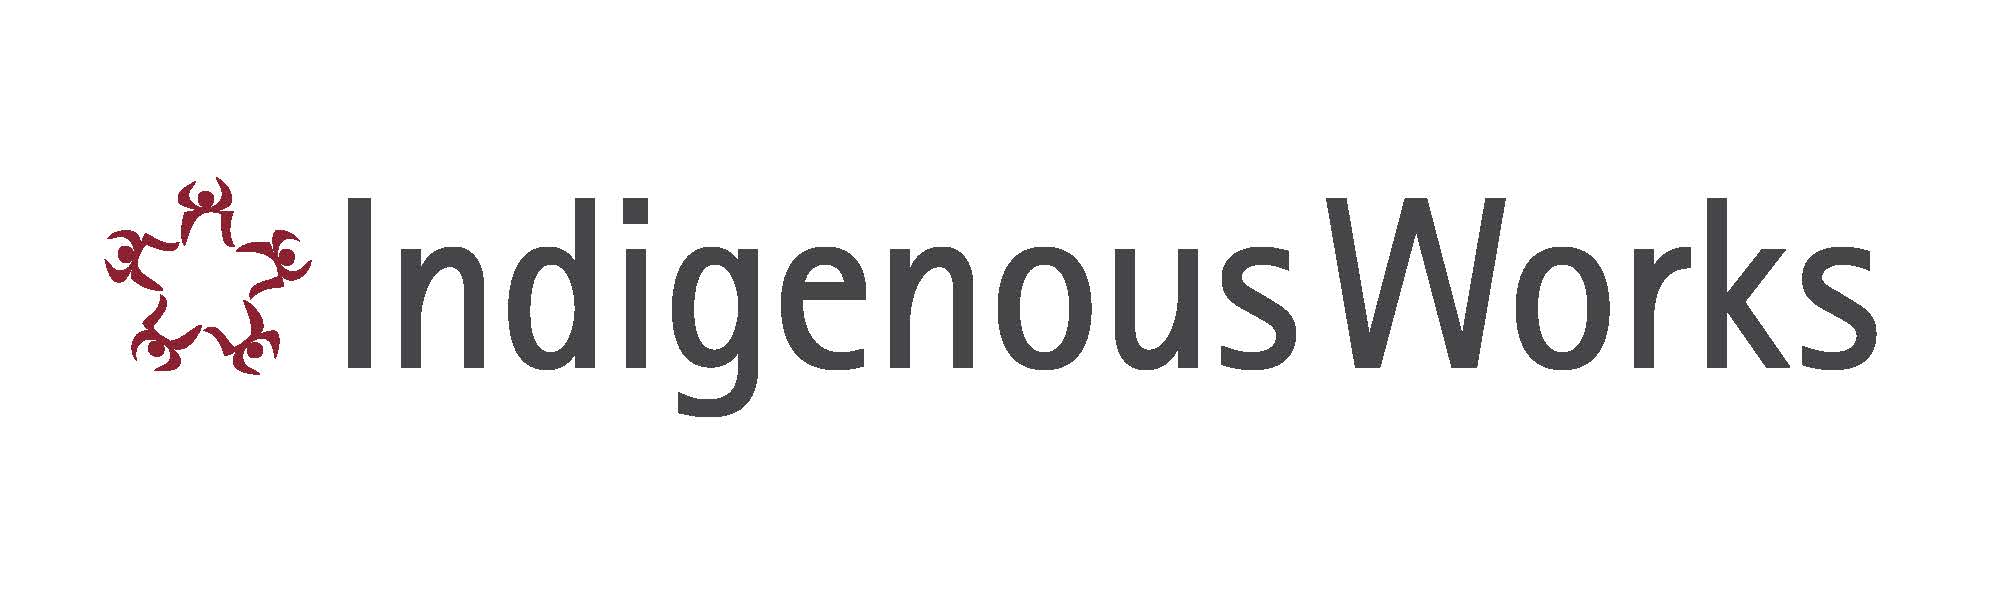 IndigenousWorks-logo Final (003)